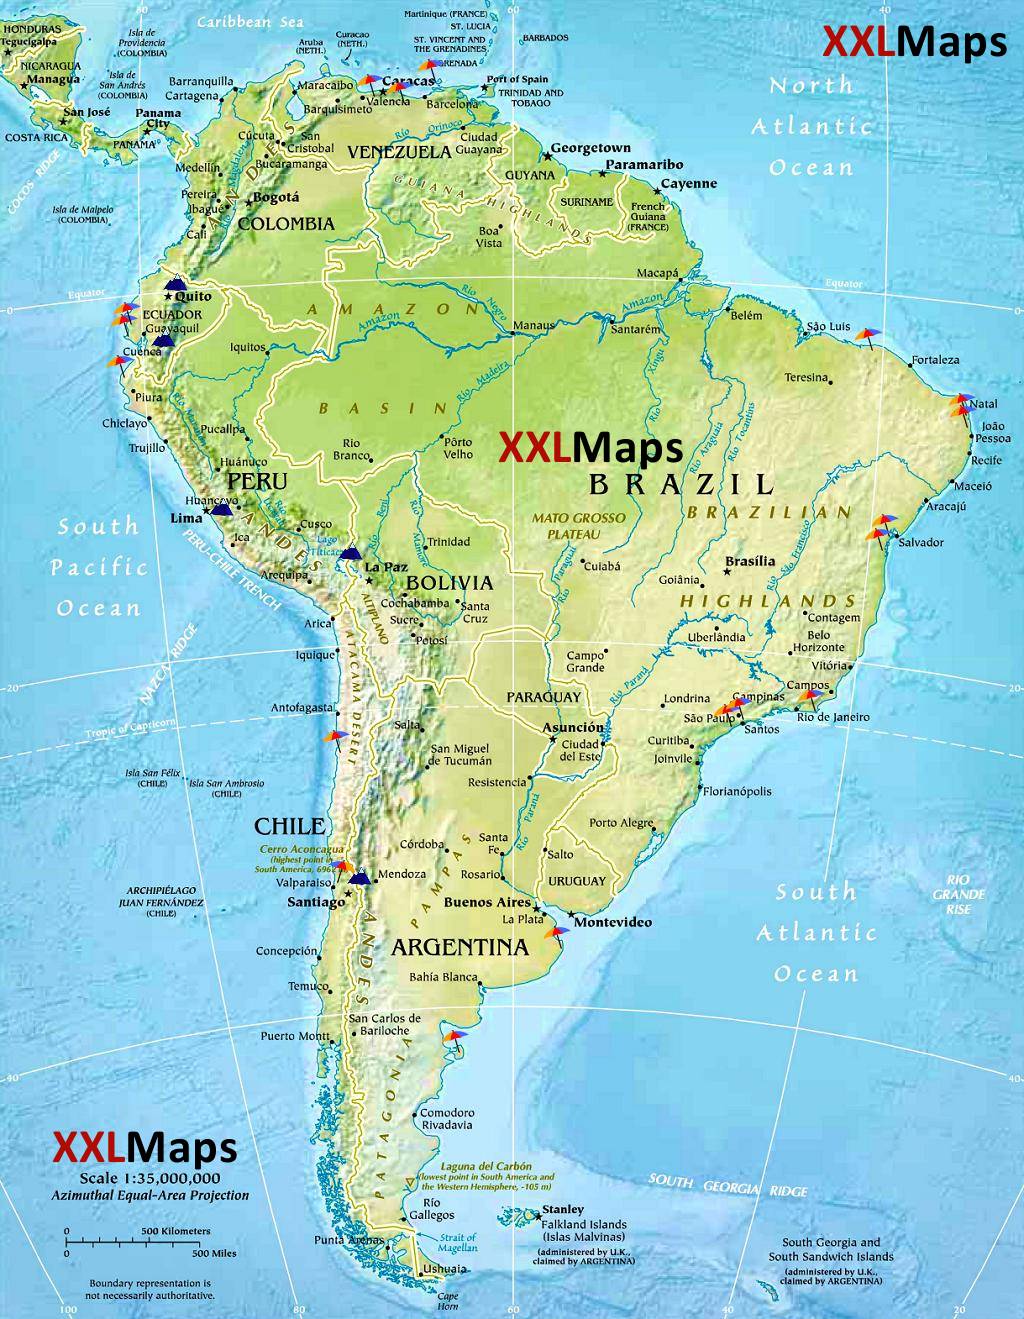 Mapa físico de América del Sur